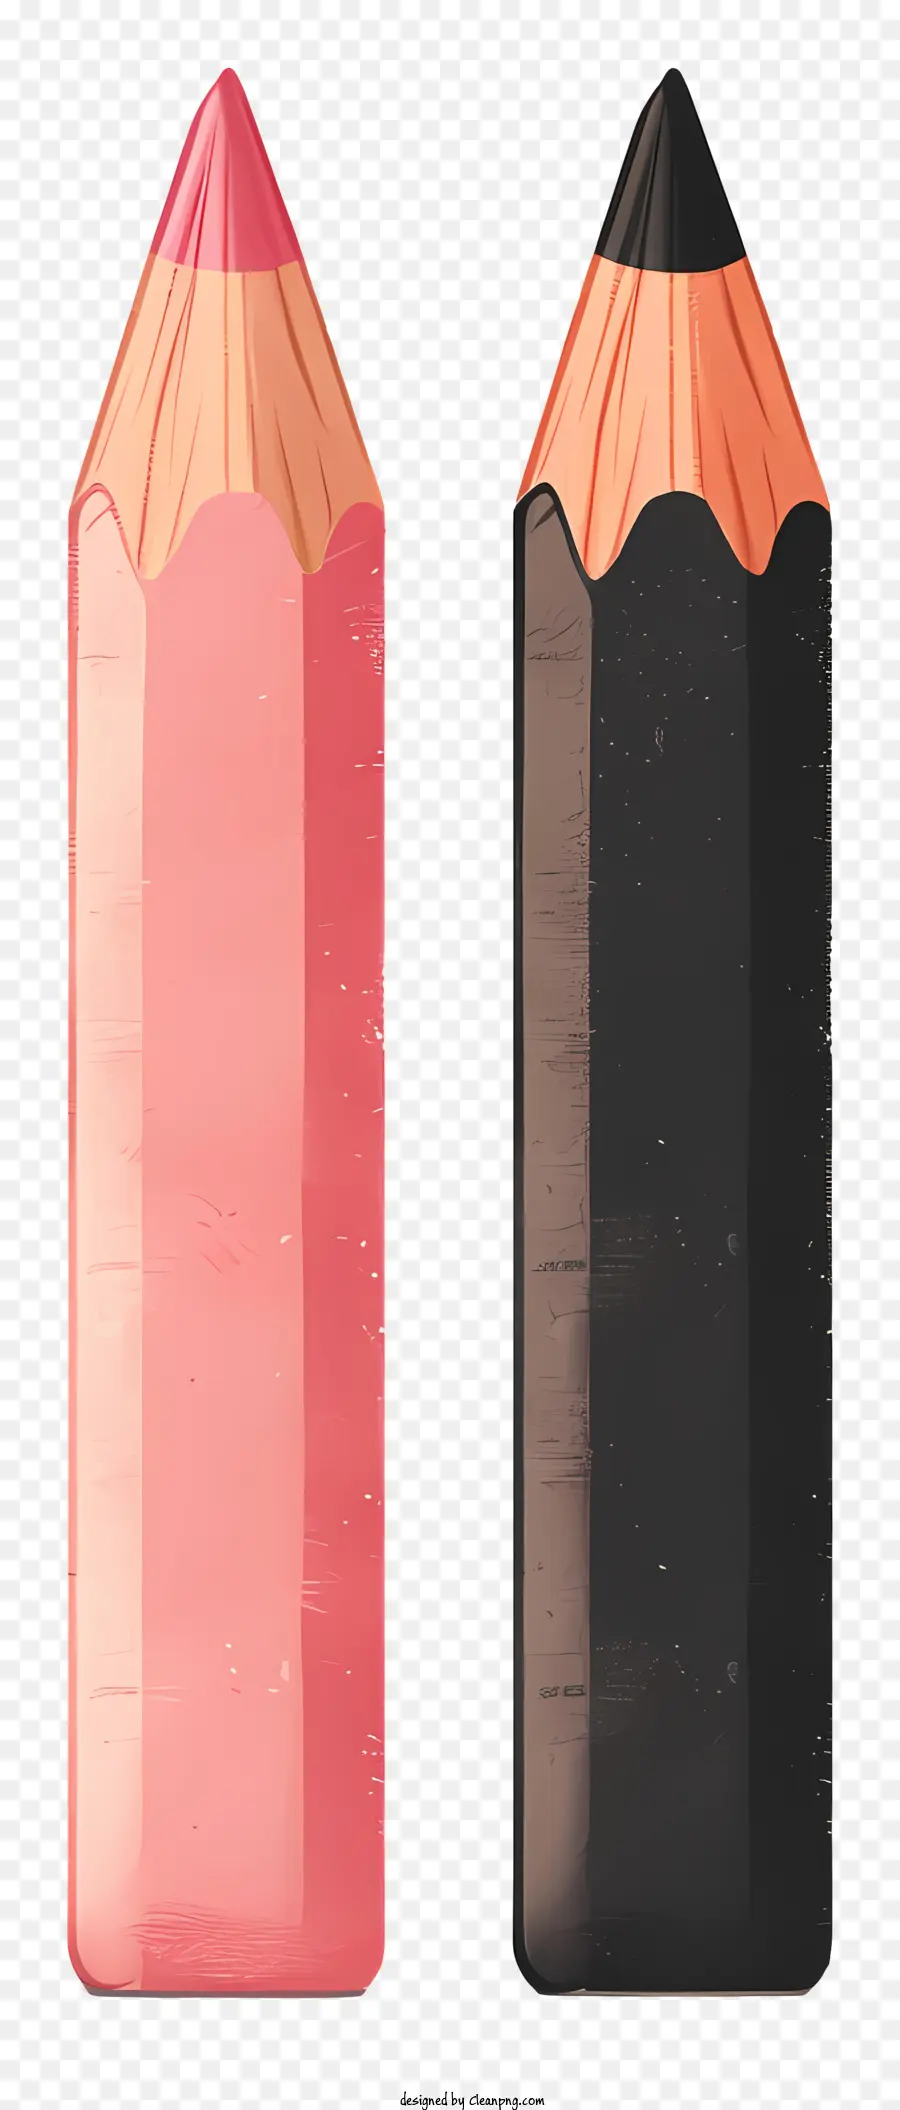 bút chì màu đen màu đỏ - Bút chì màu đen với xóa màu đỏ và hồng